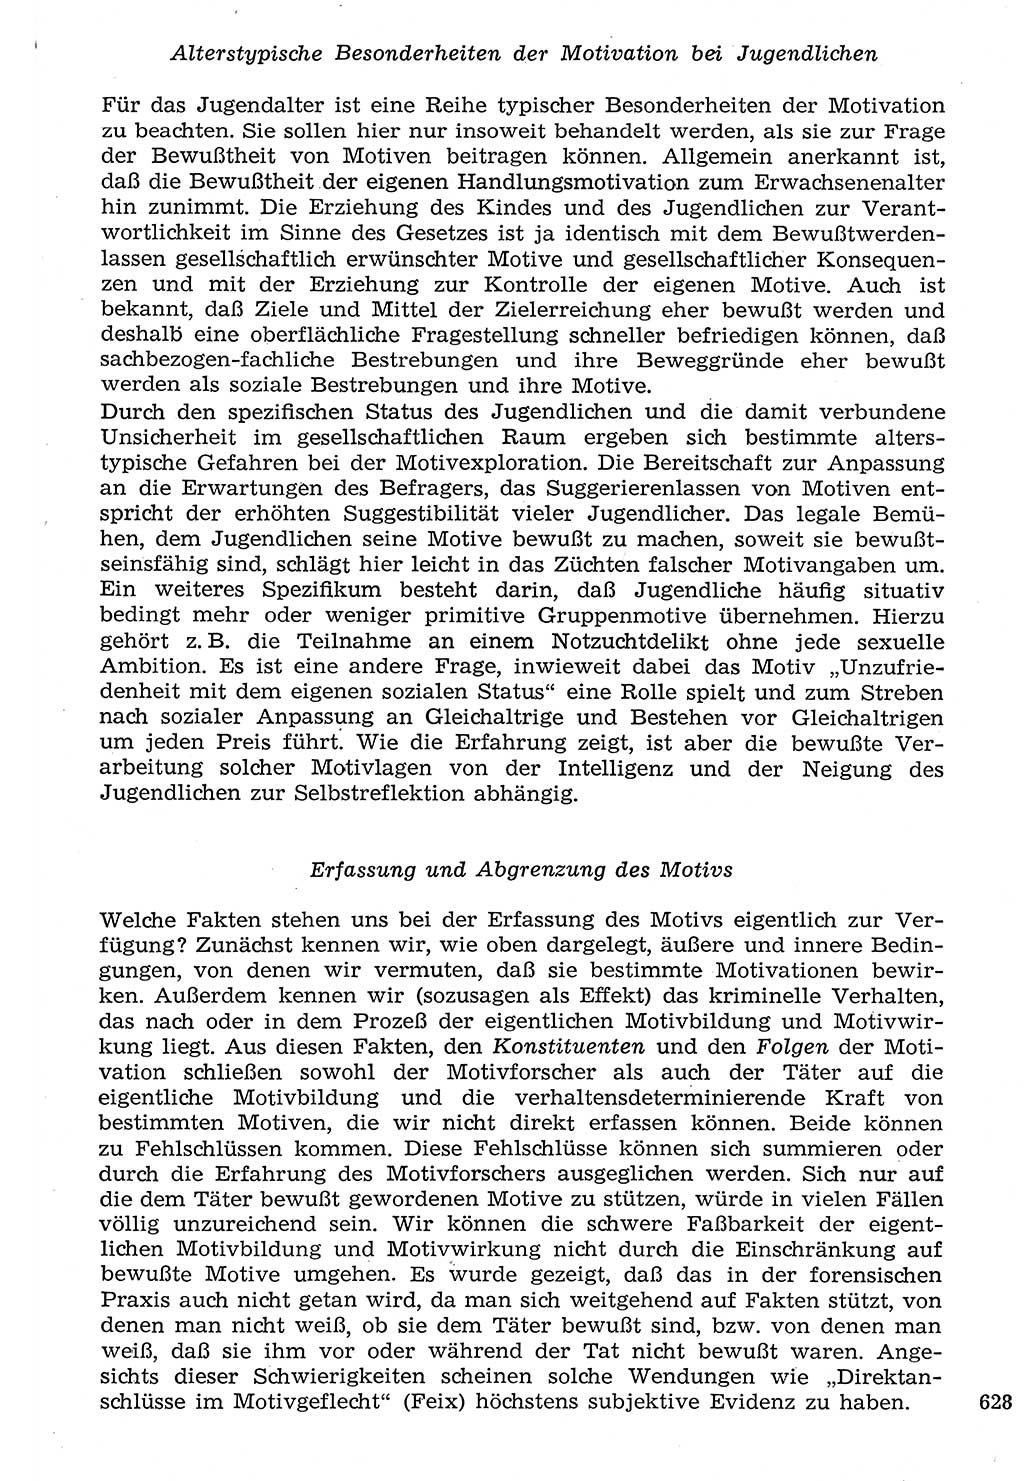 Staat und Recht (StuR), 17. Jahrgang [Deutsche Demokratische Republik (DDR)] 1968, Seite 628 (StuR DDR 1968, S. 628)